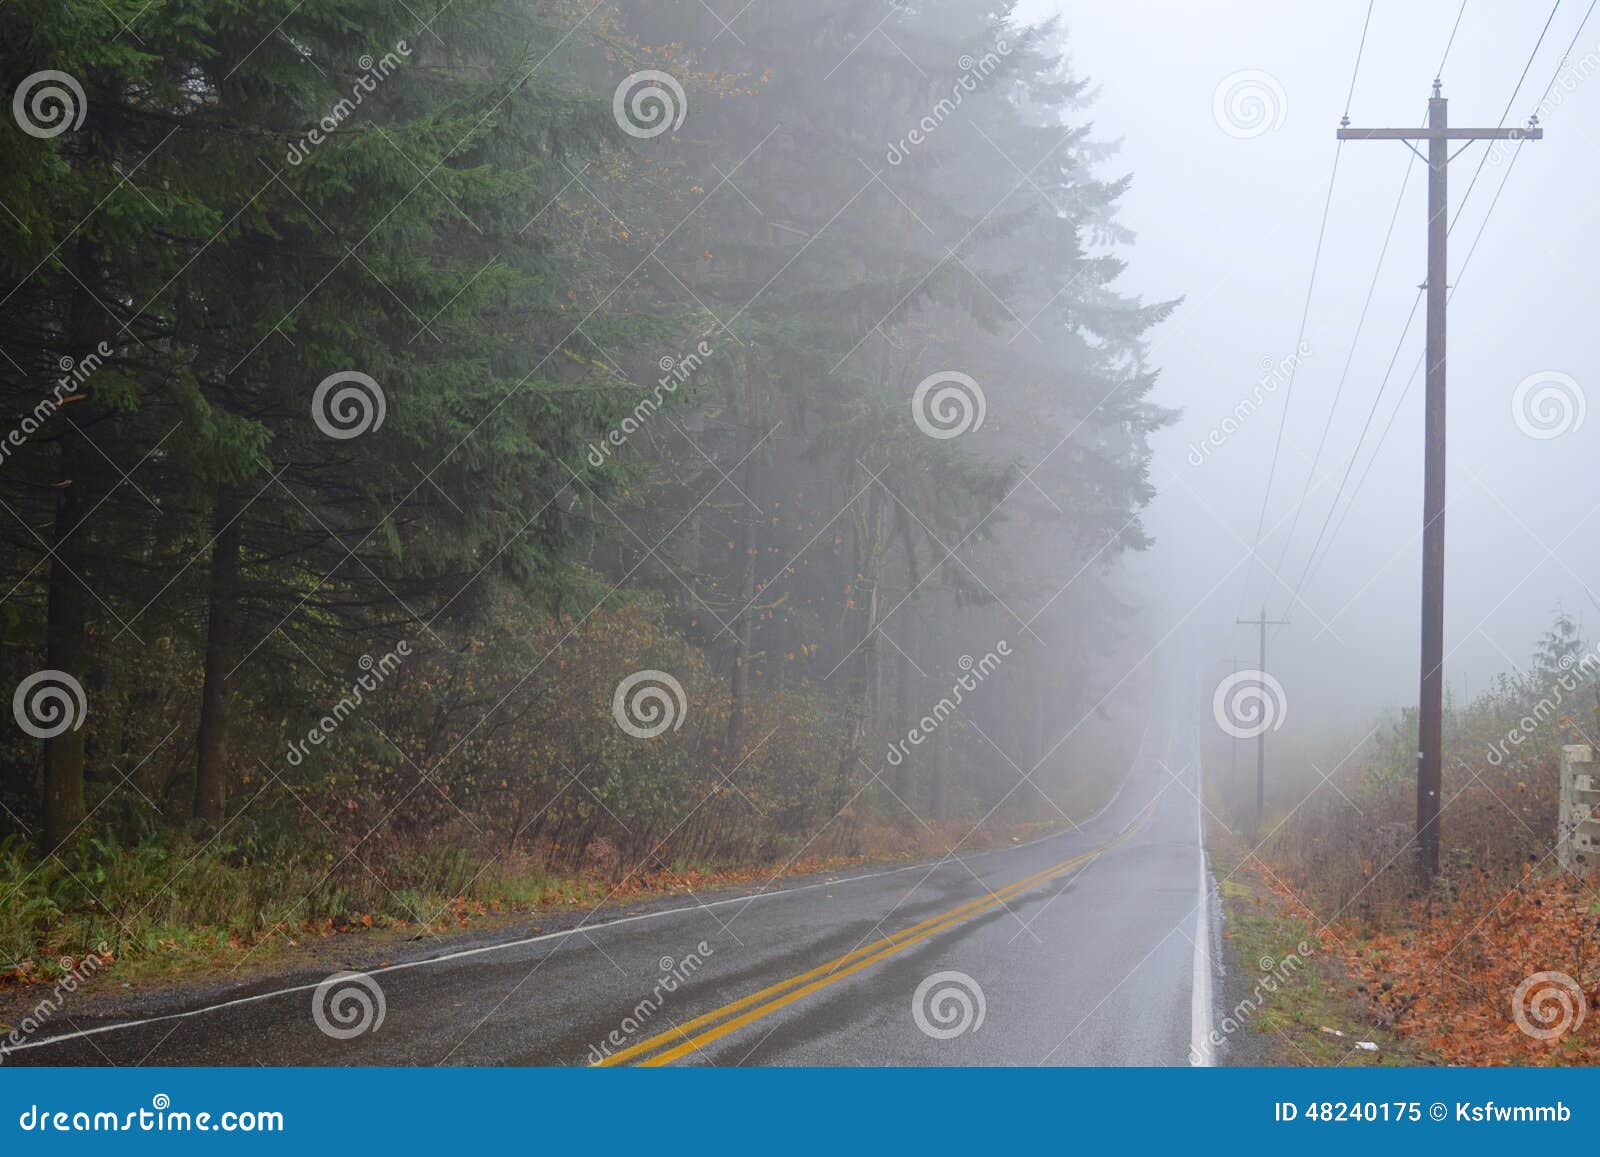 road receding into fog